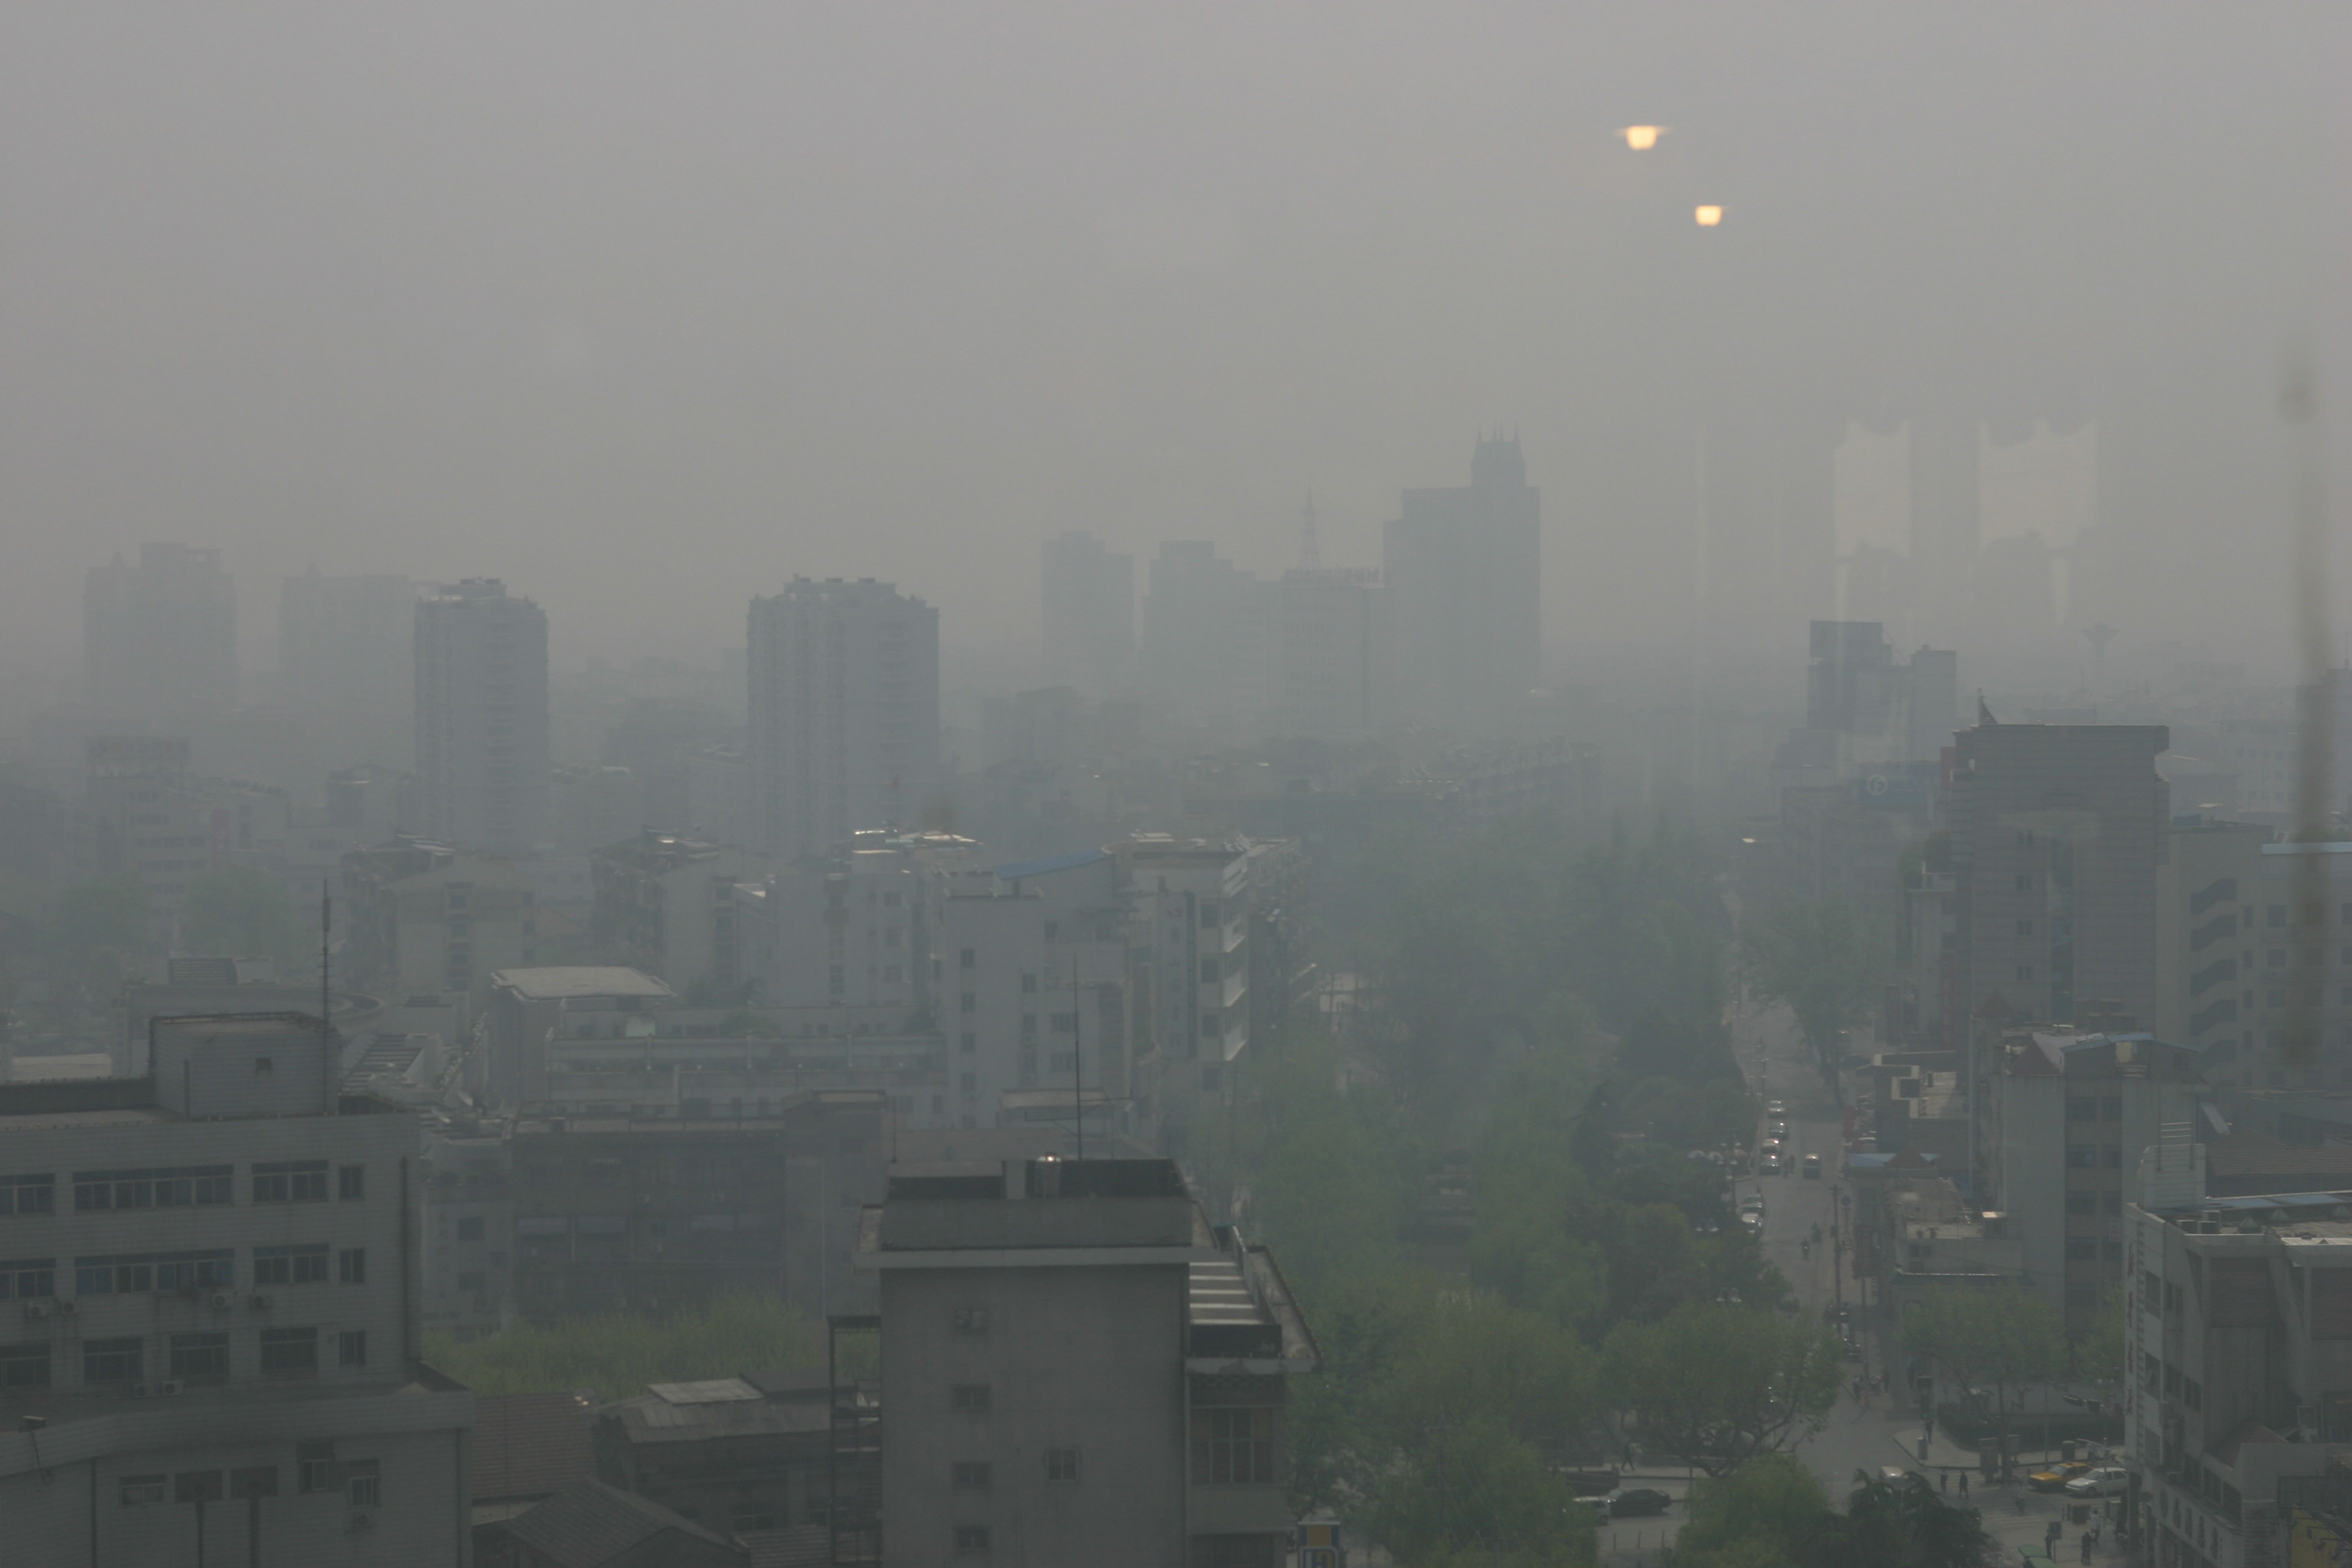 La contaminación del aire: el smog – Blog sobre medio ambiente y ...